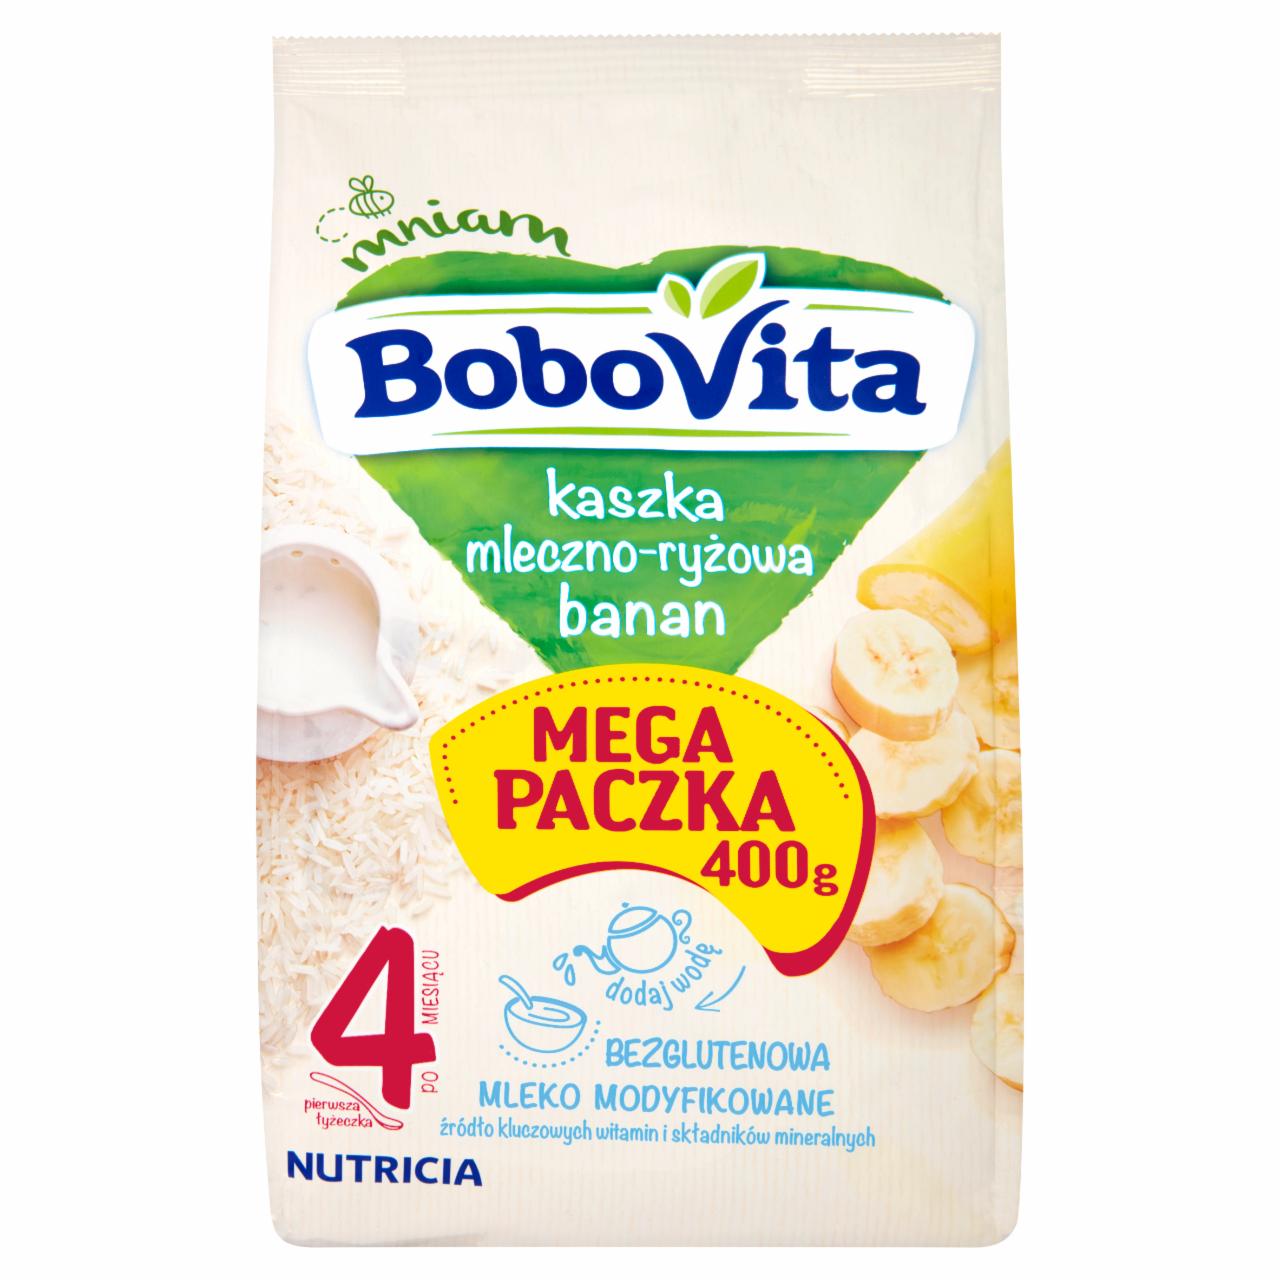 Zdjęcia - BoboVita Kaszka mleczno-ryżowa banan po 4 miesiącu 400 g